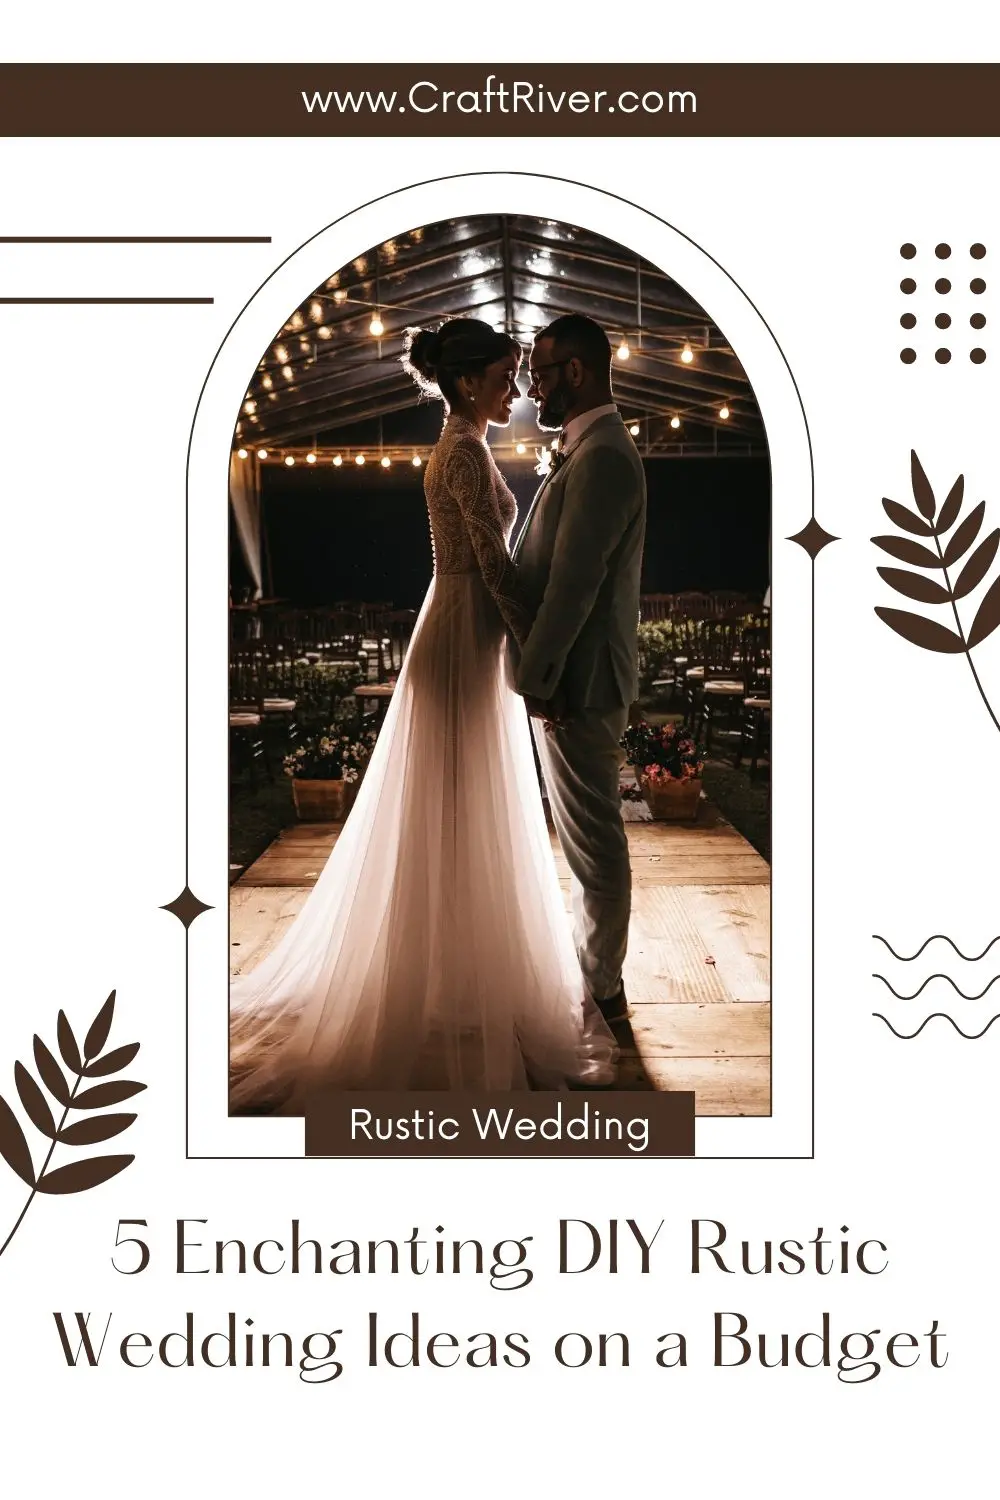 DIY Rustic Wedding Ideas on a Budget